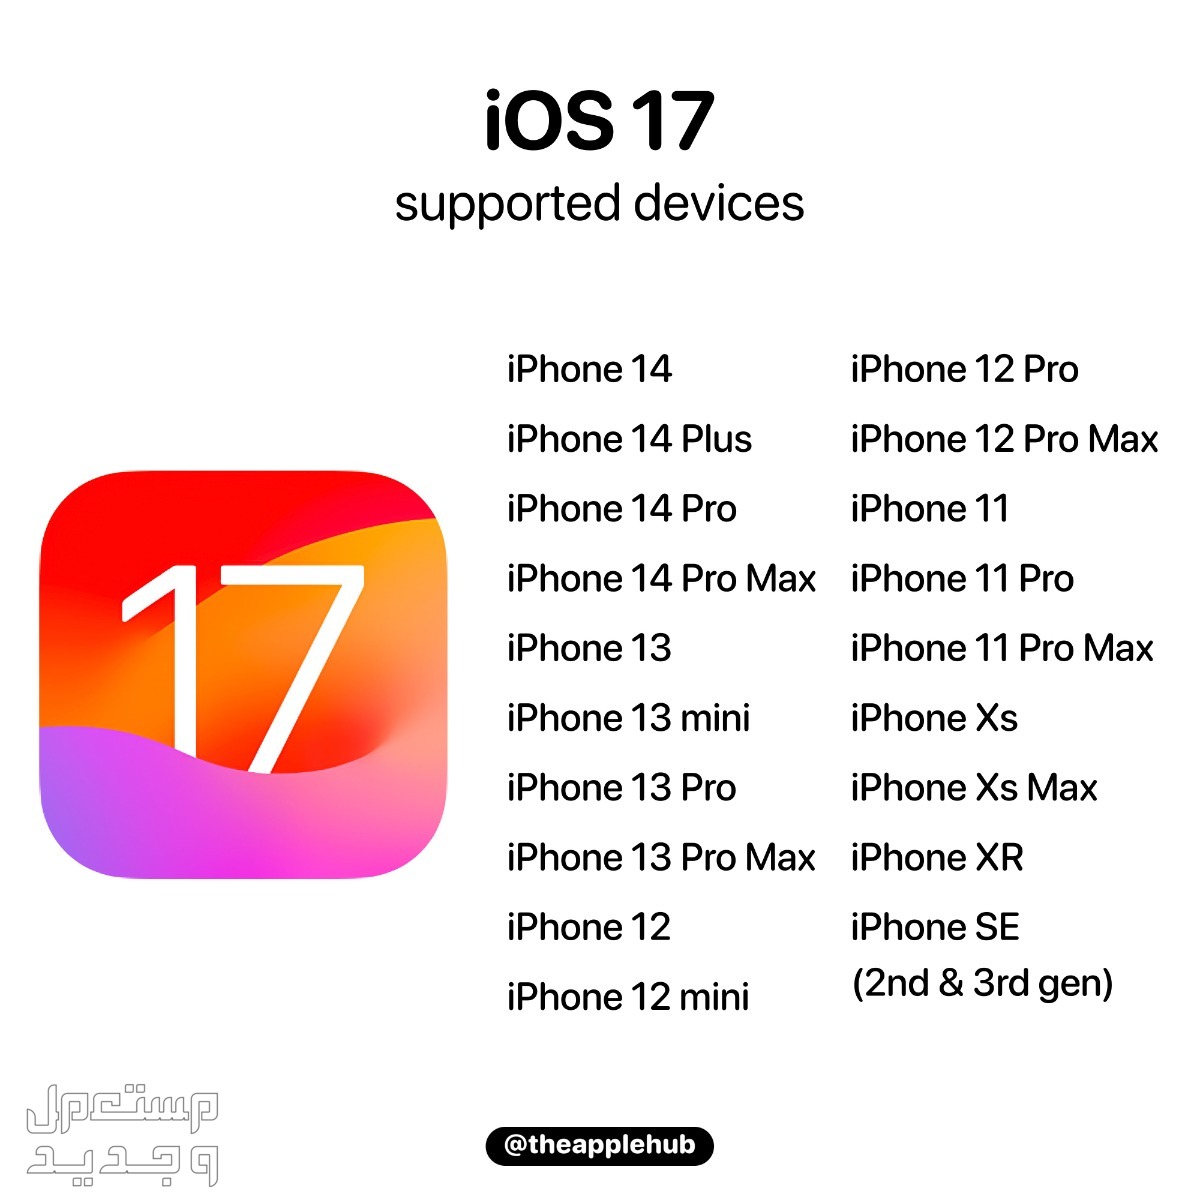 نظام iOS 17 لهواتف ايفون بمميزات جديدة تعرف عليها في ليبيا